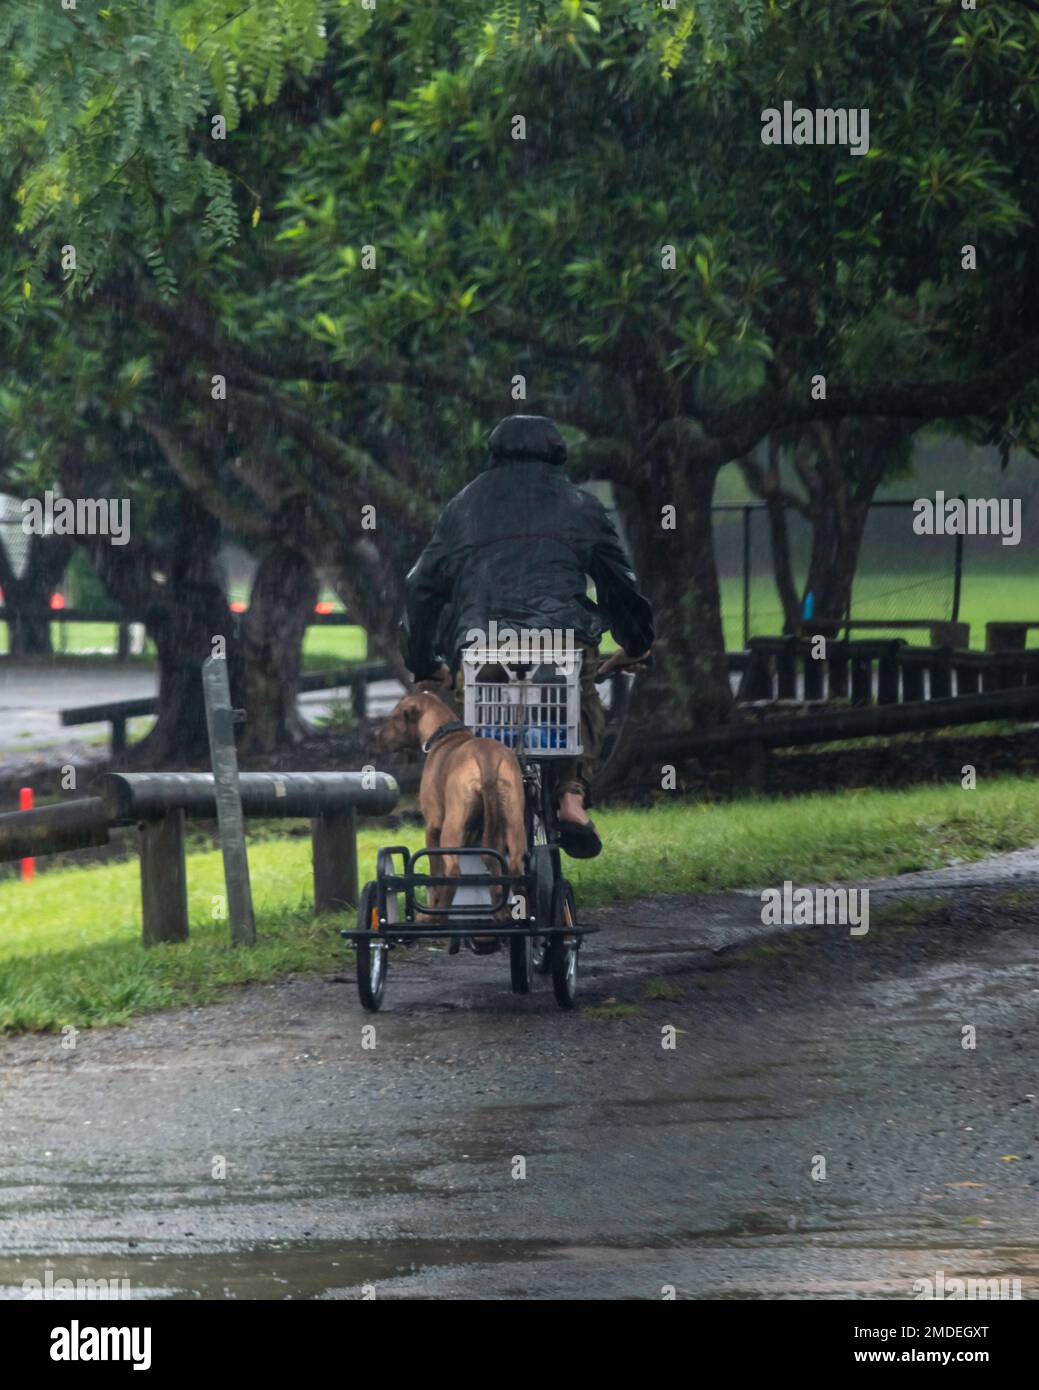 Un gros chien debout sur un chariot remorqué derrière une personne à vélo pendant les inondations de février 2022 dans le parc Teralba de Mitchelton, Brisbane, Australie Banque D'Images